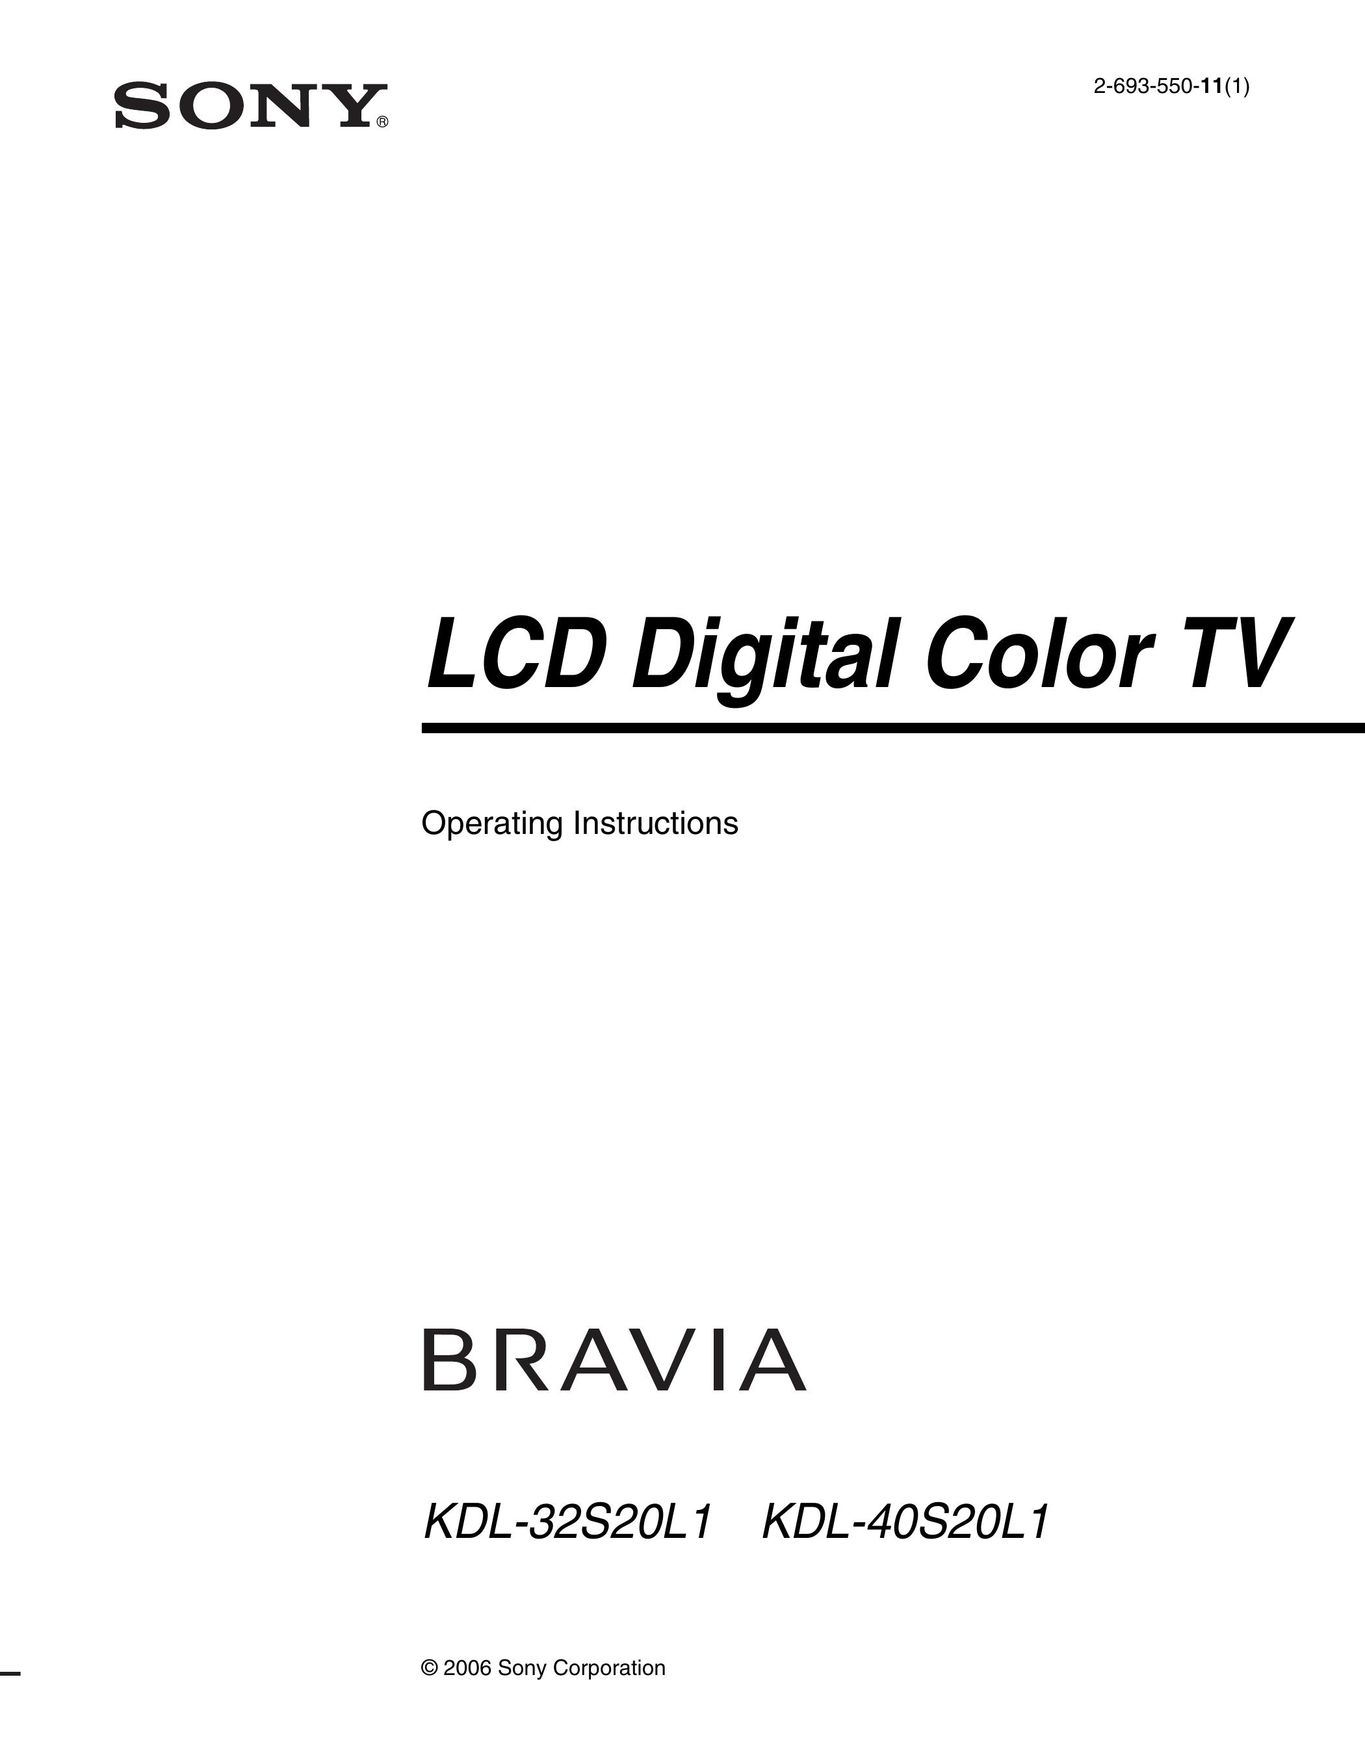 Sony KDL-40S20L1 TV VCR Combo User Manual